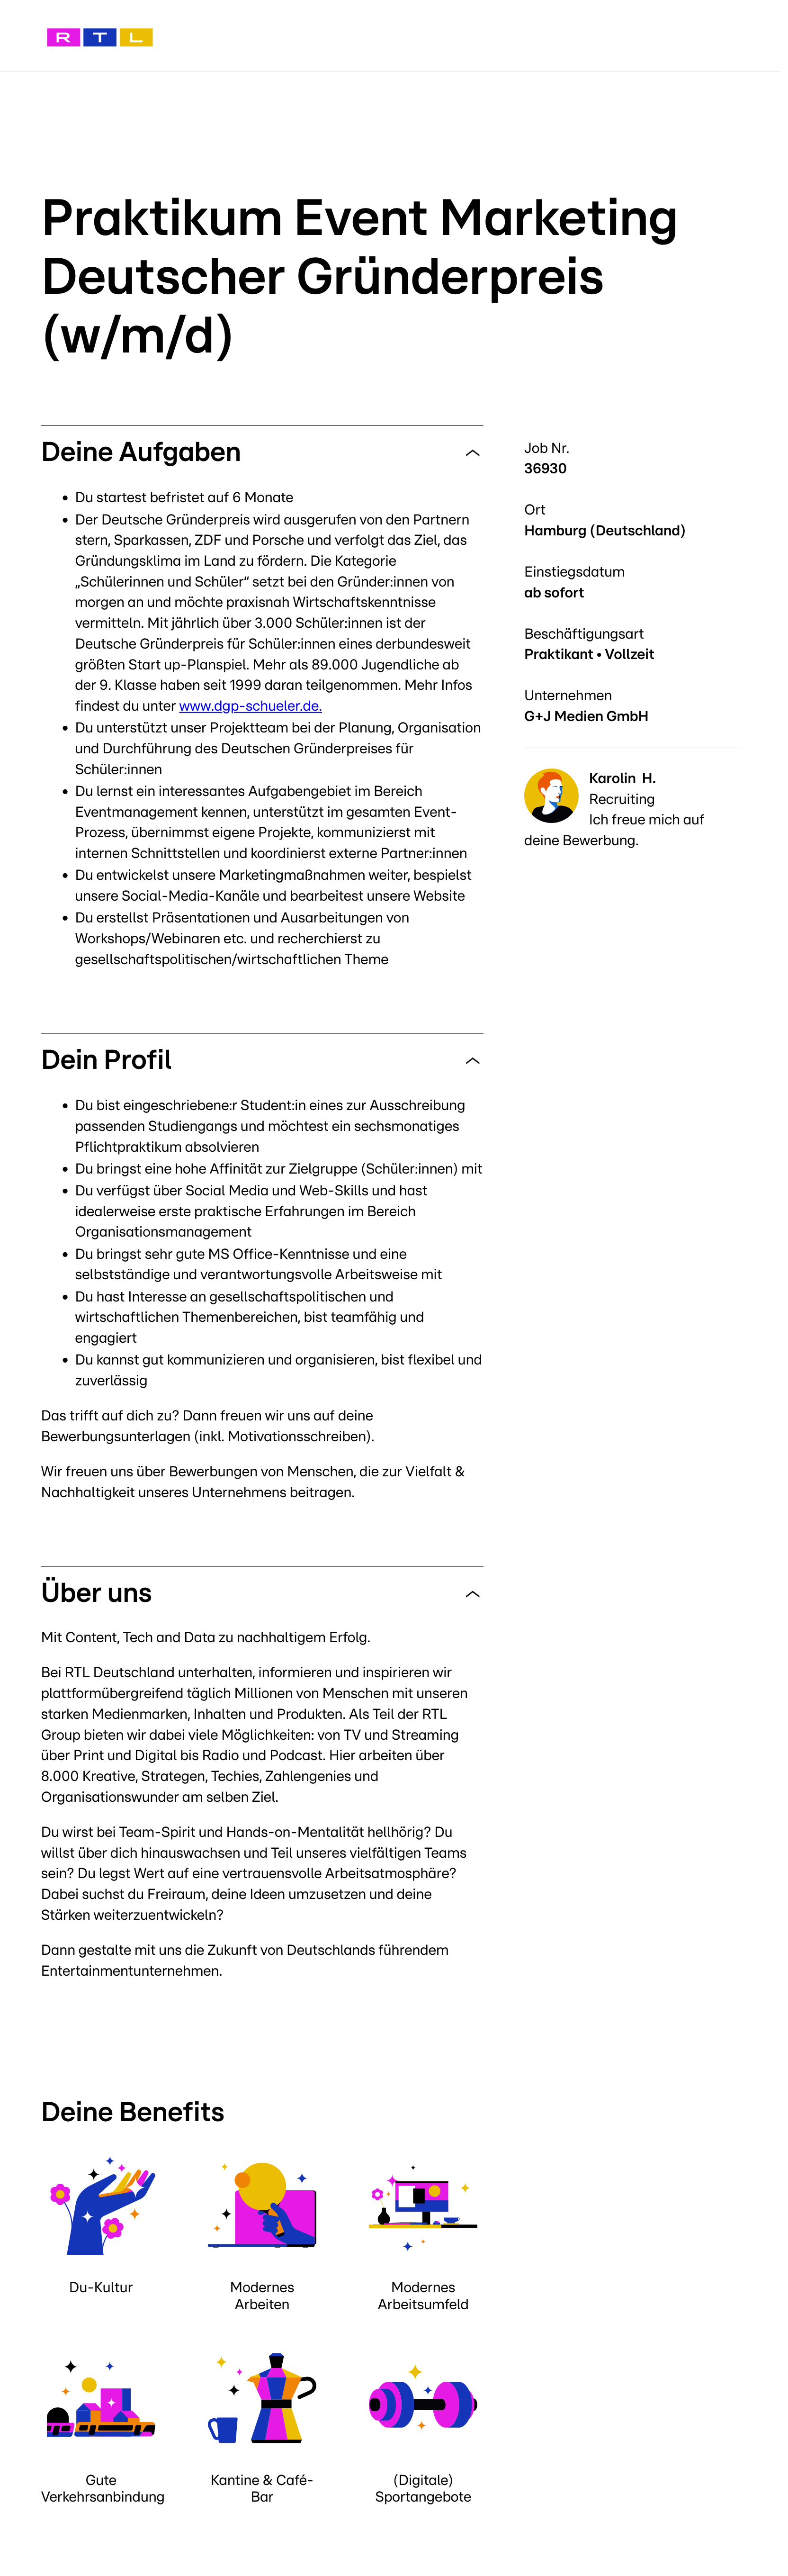 Praktikum Event Marketing Deutscher Gründerpreis (w/m/d)